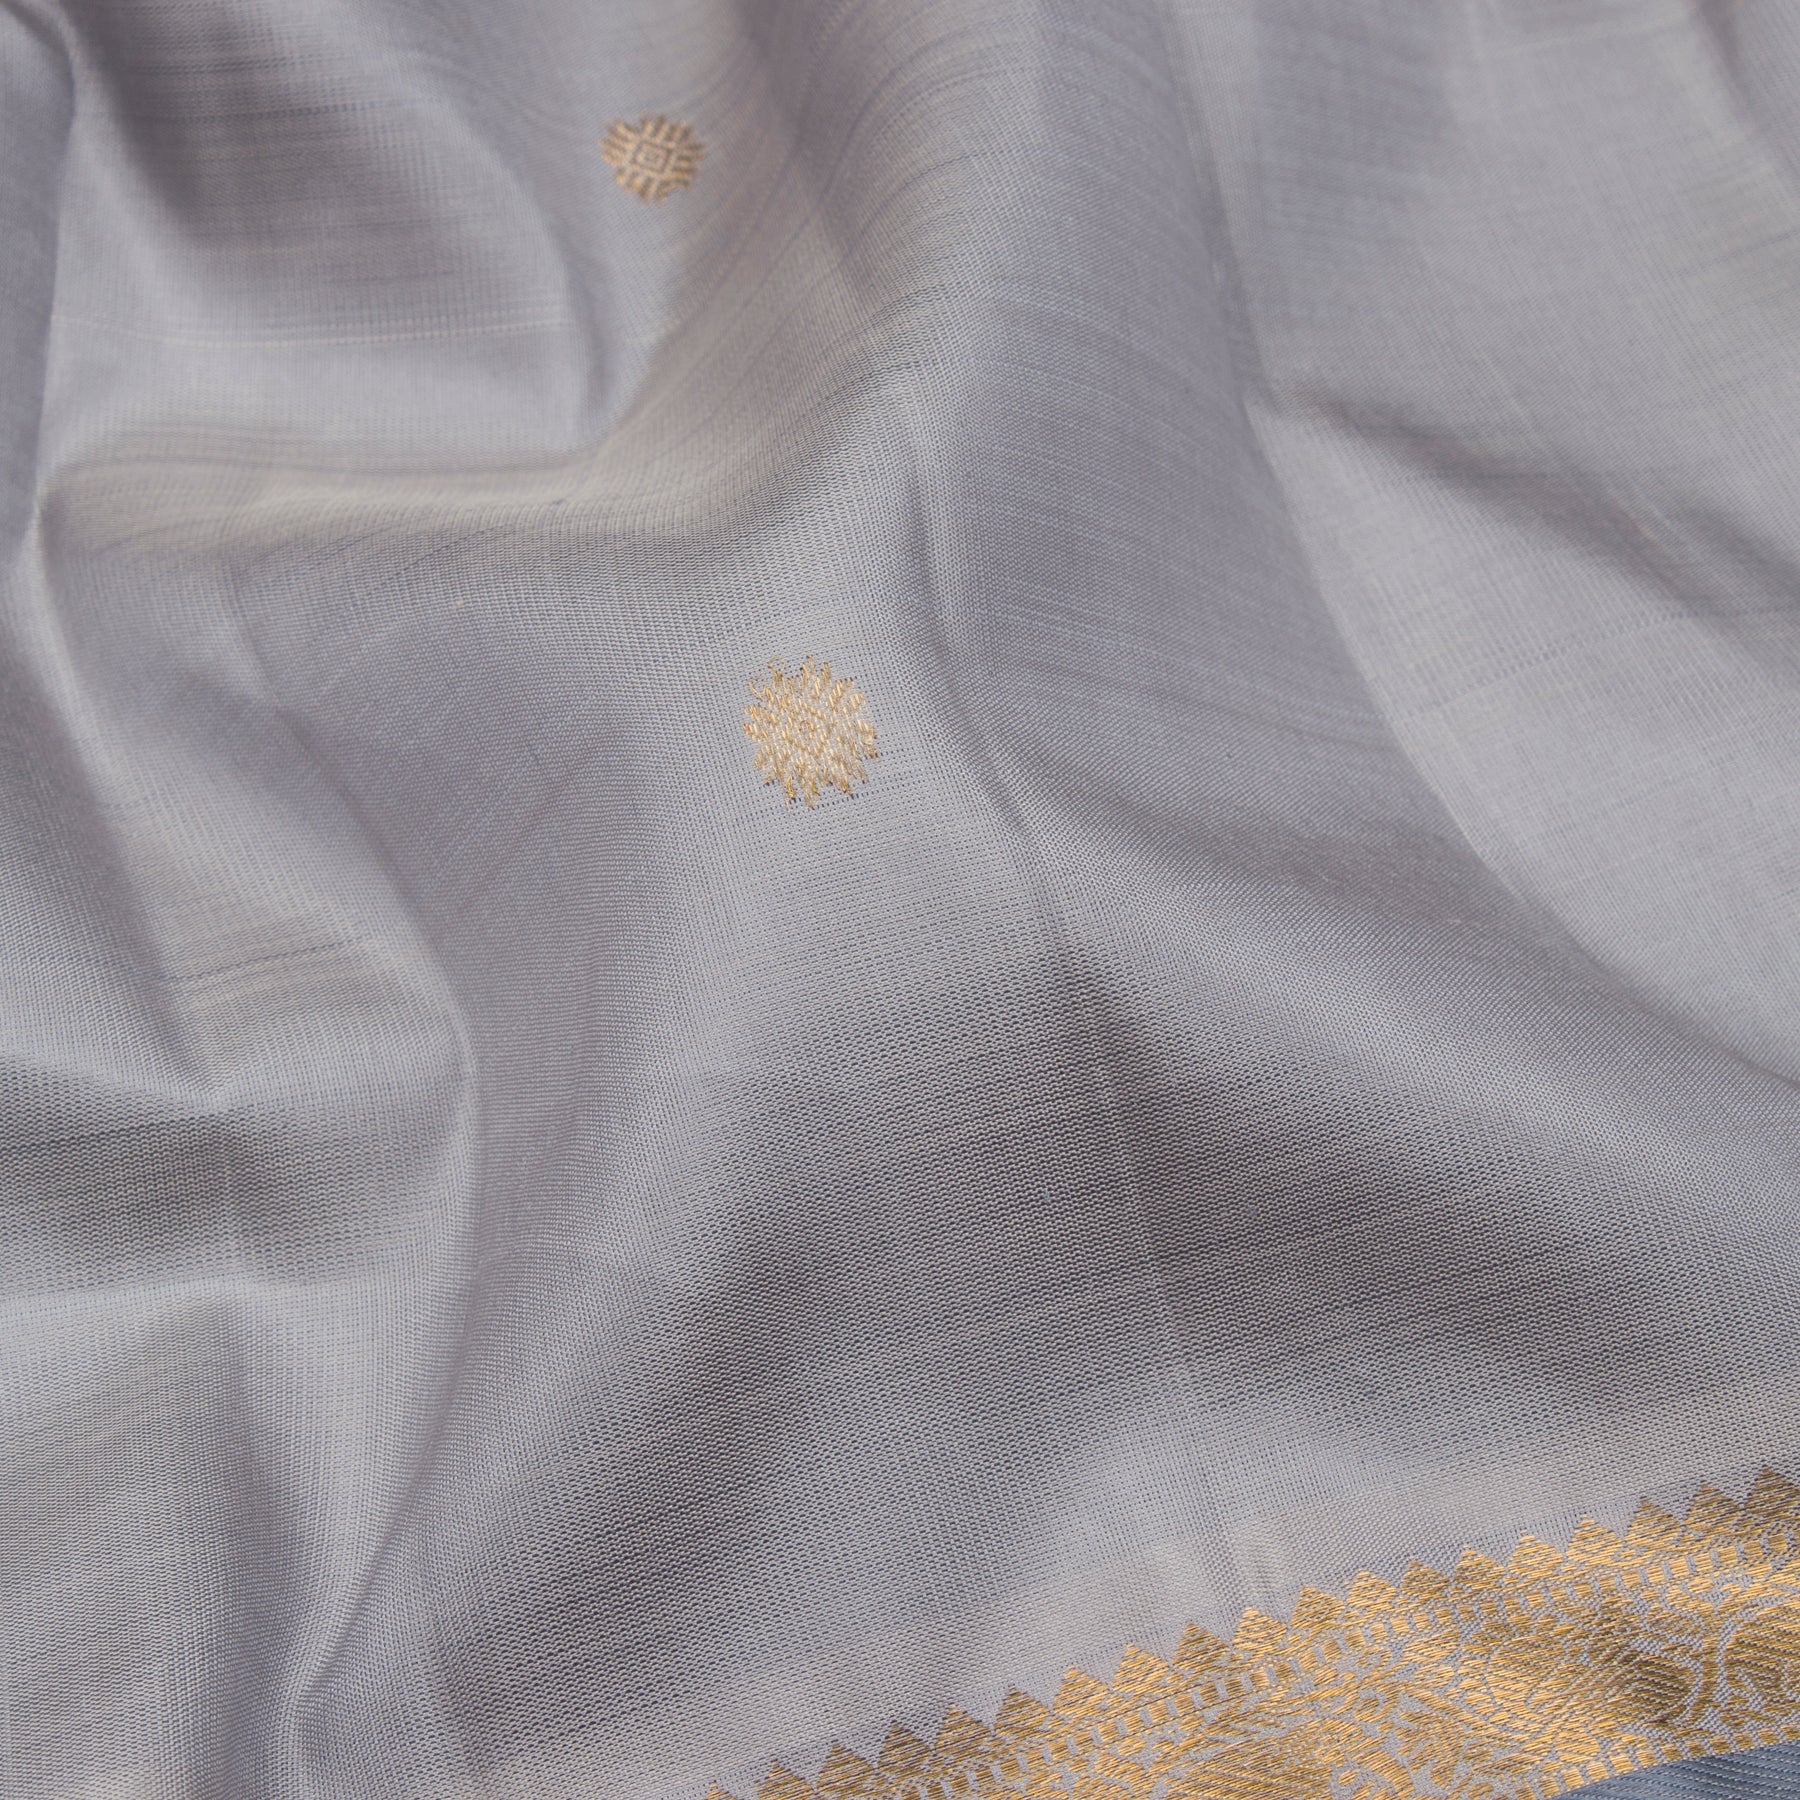 Kanakavalli Kanjivaram Silk Sari 23-599-HS001-05311 - Fabric view